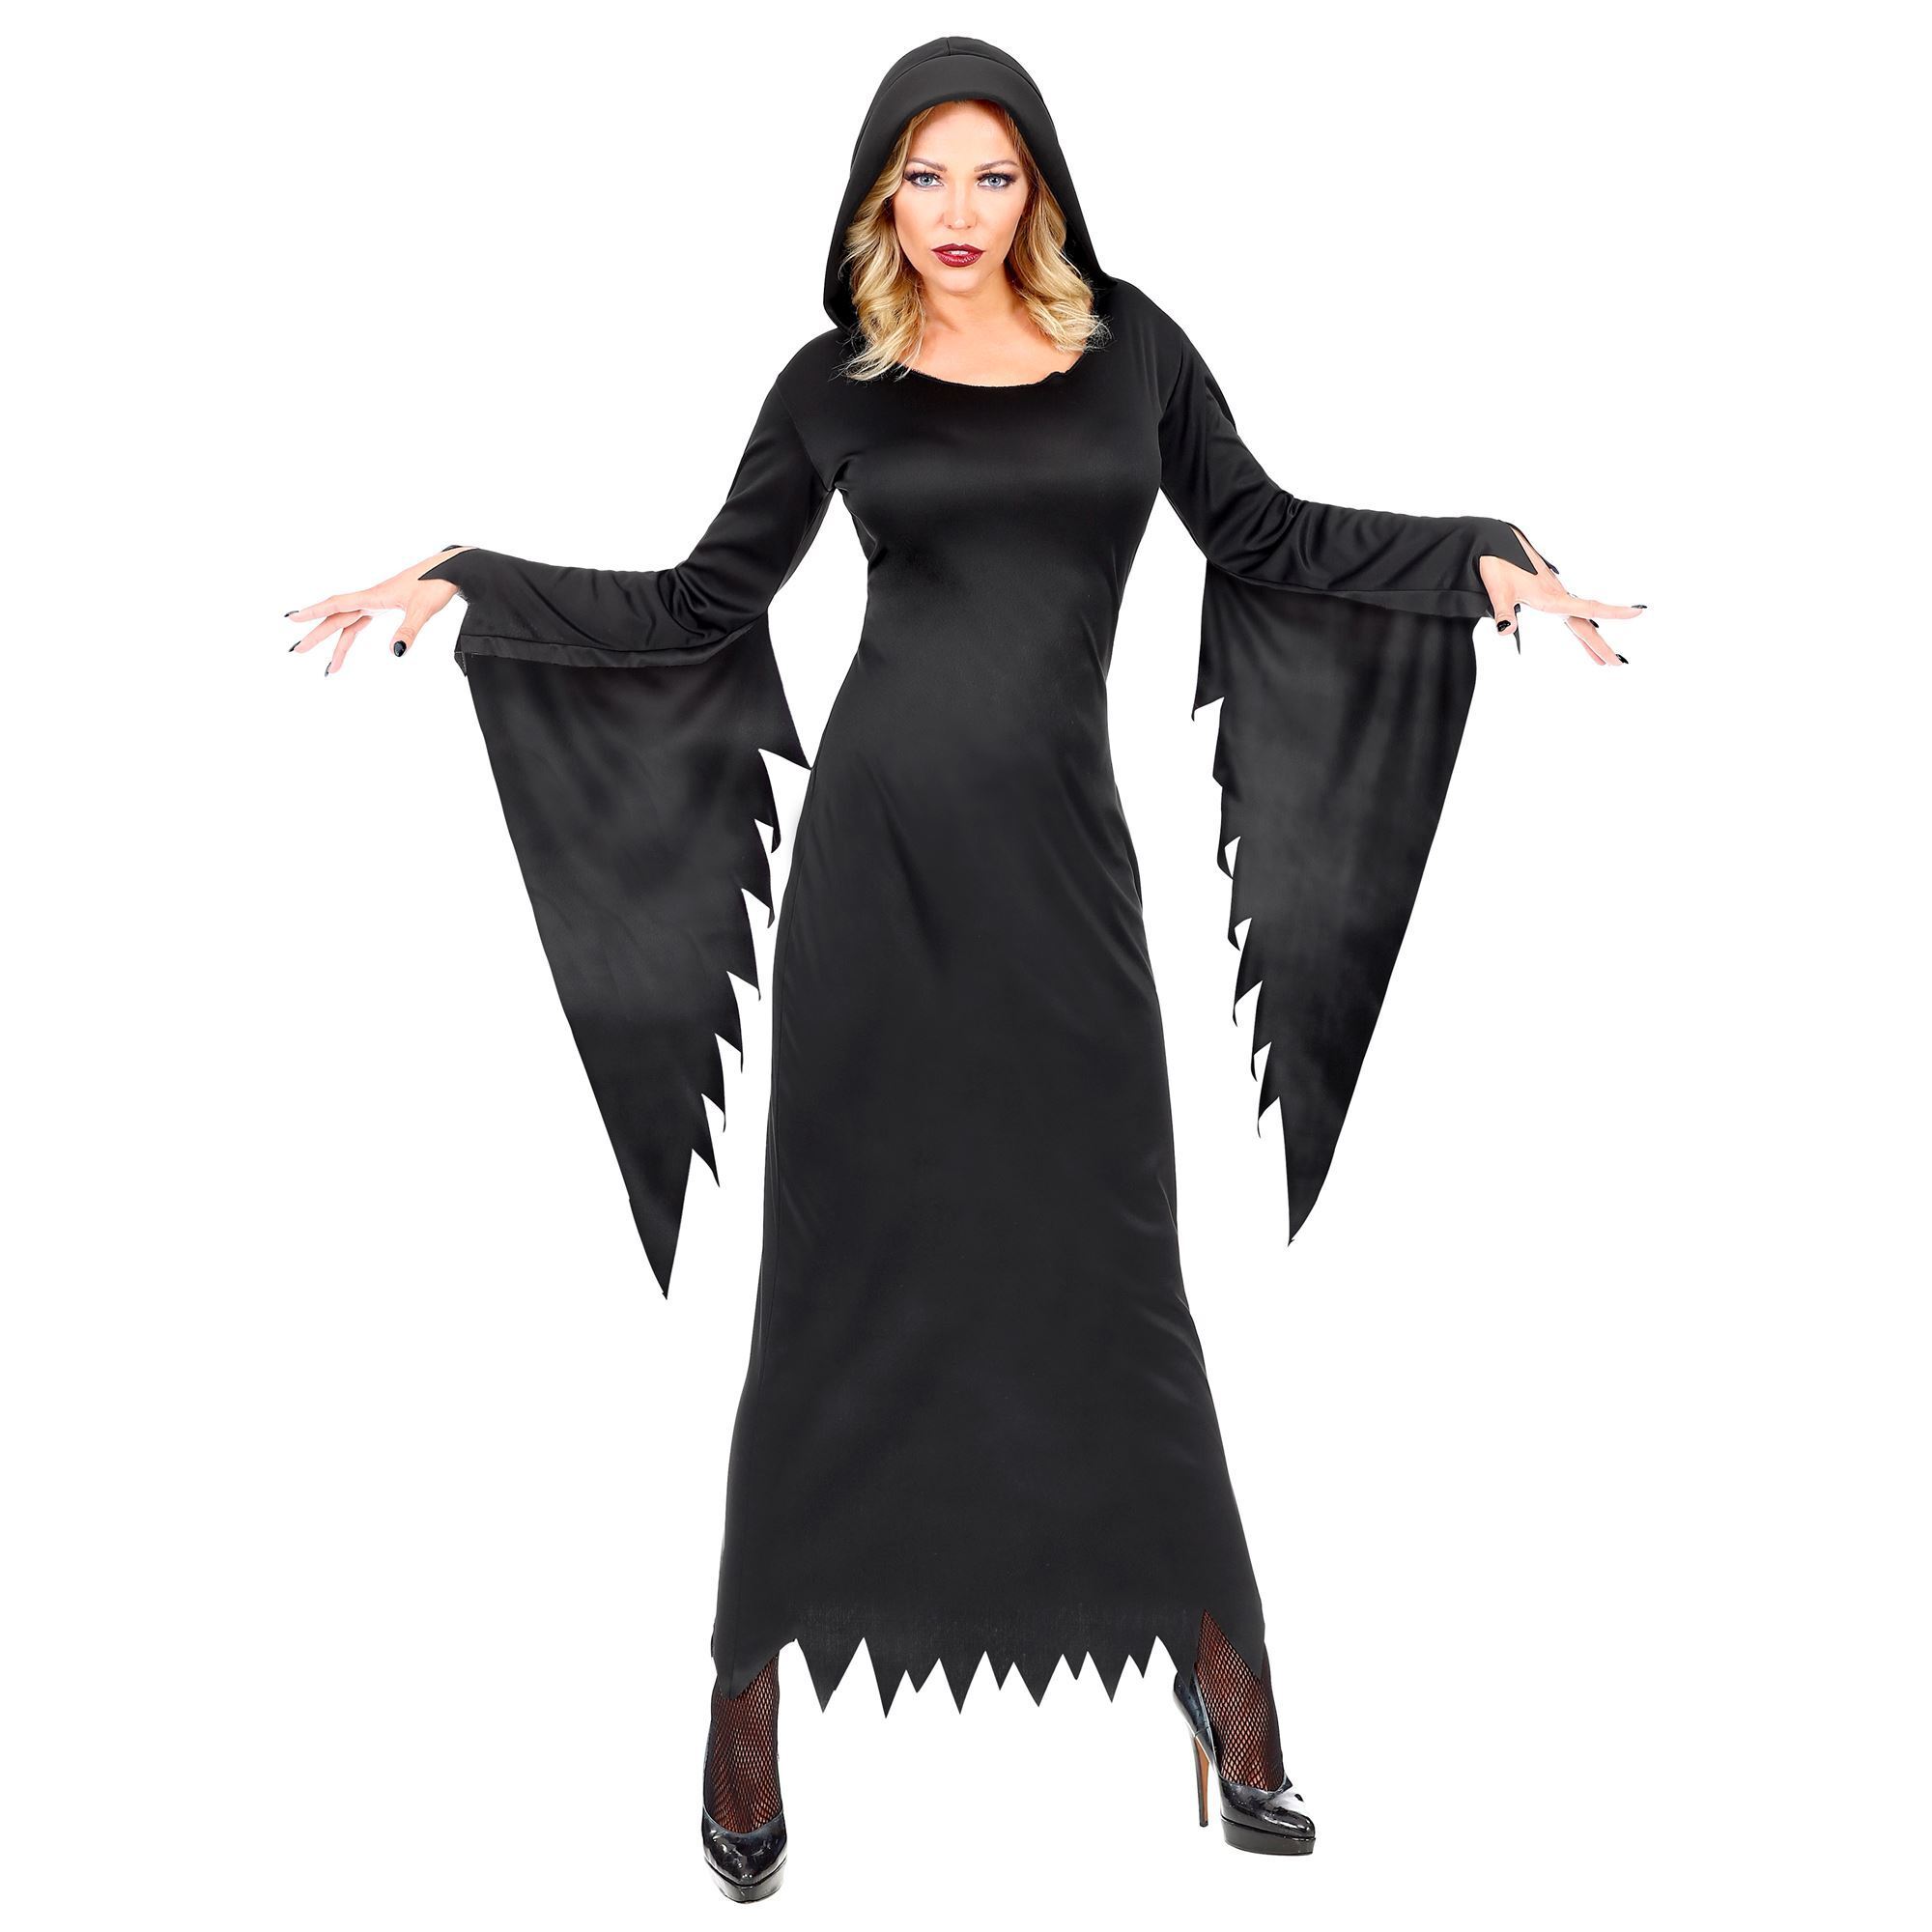 Gothic jurk zwart Halloween dames outfitje